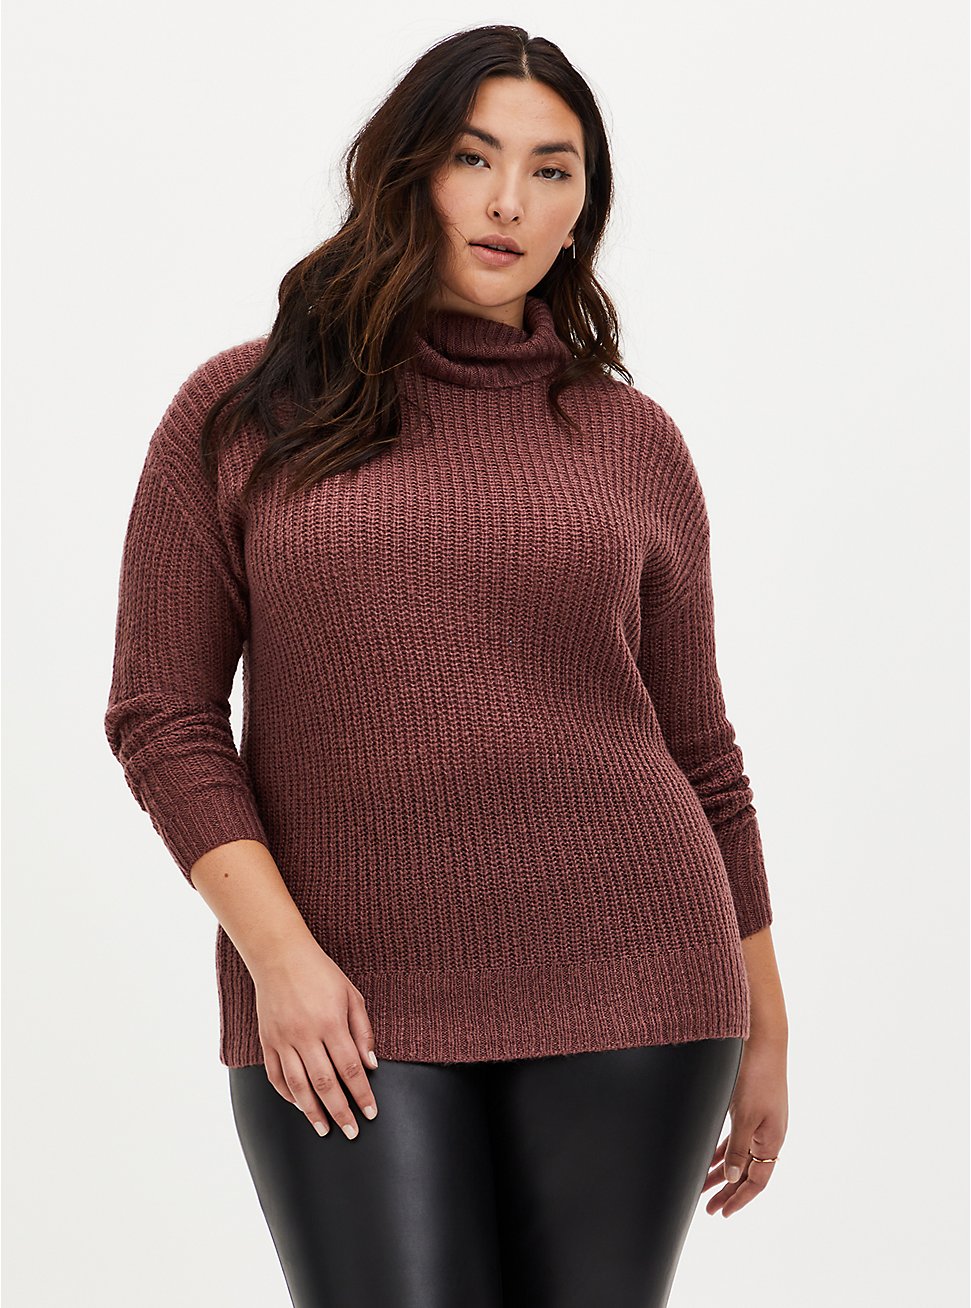 Walnut Turtleneck Pullover Sweater, ROSE BROWN, hi-res